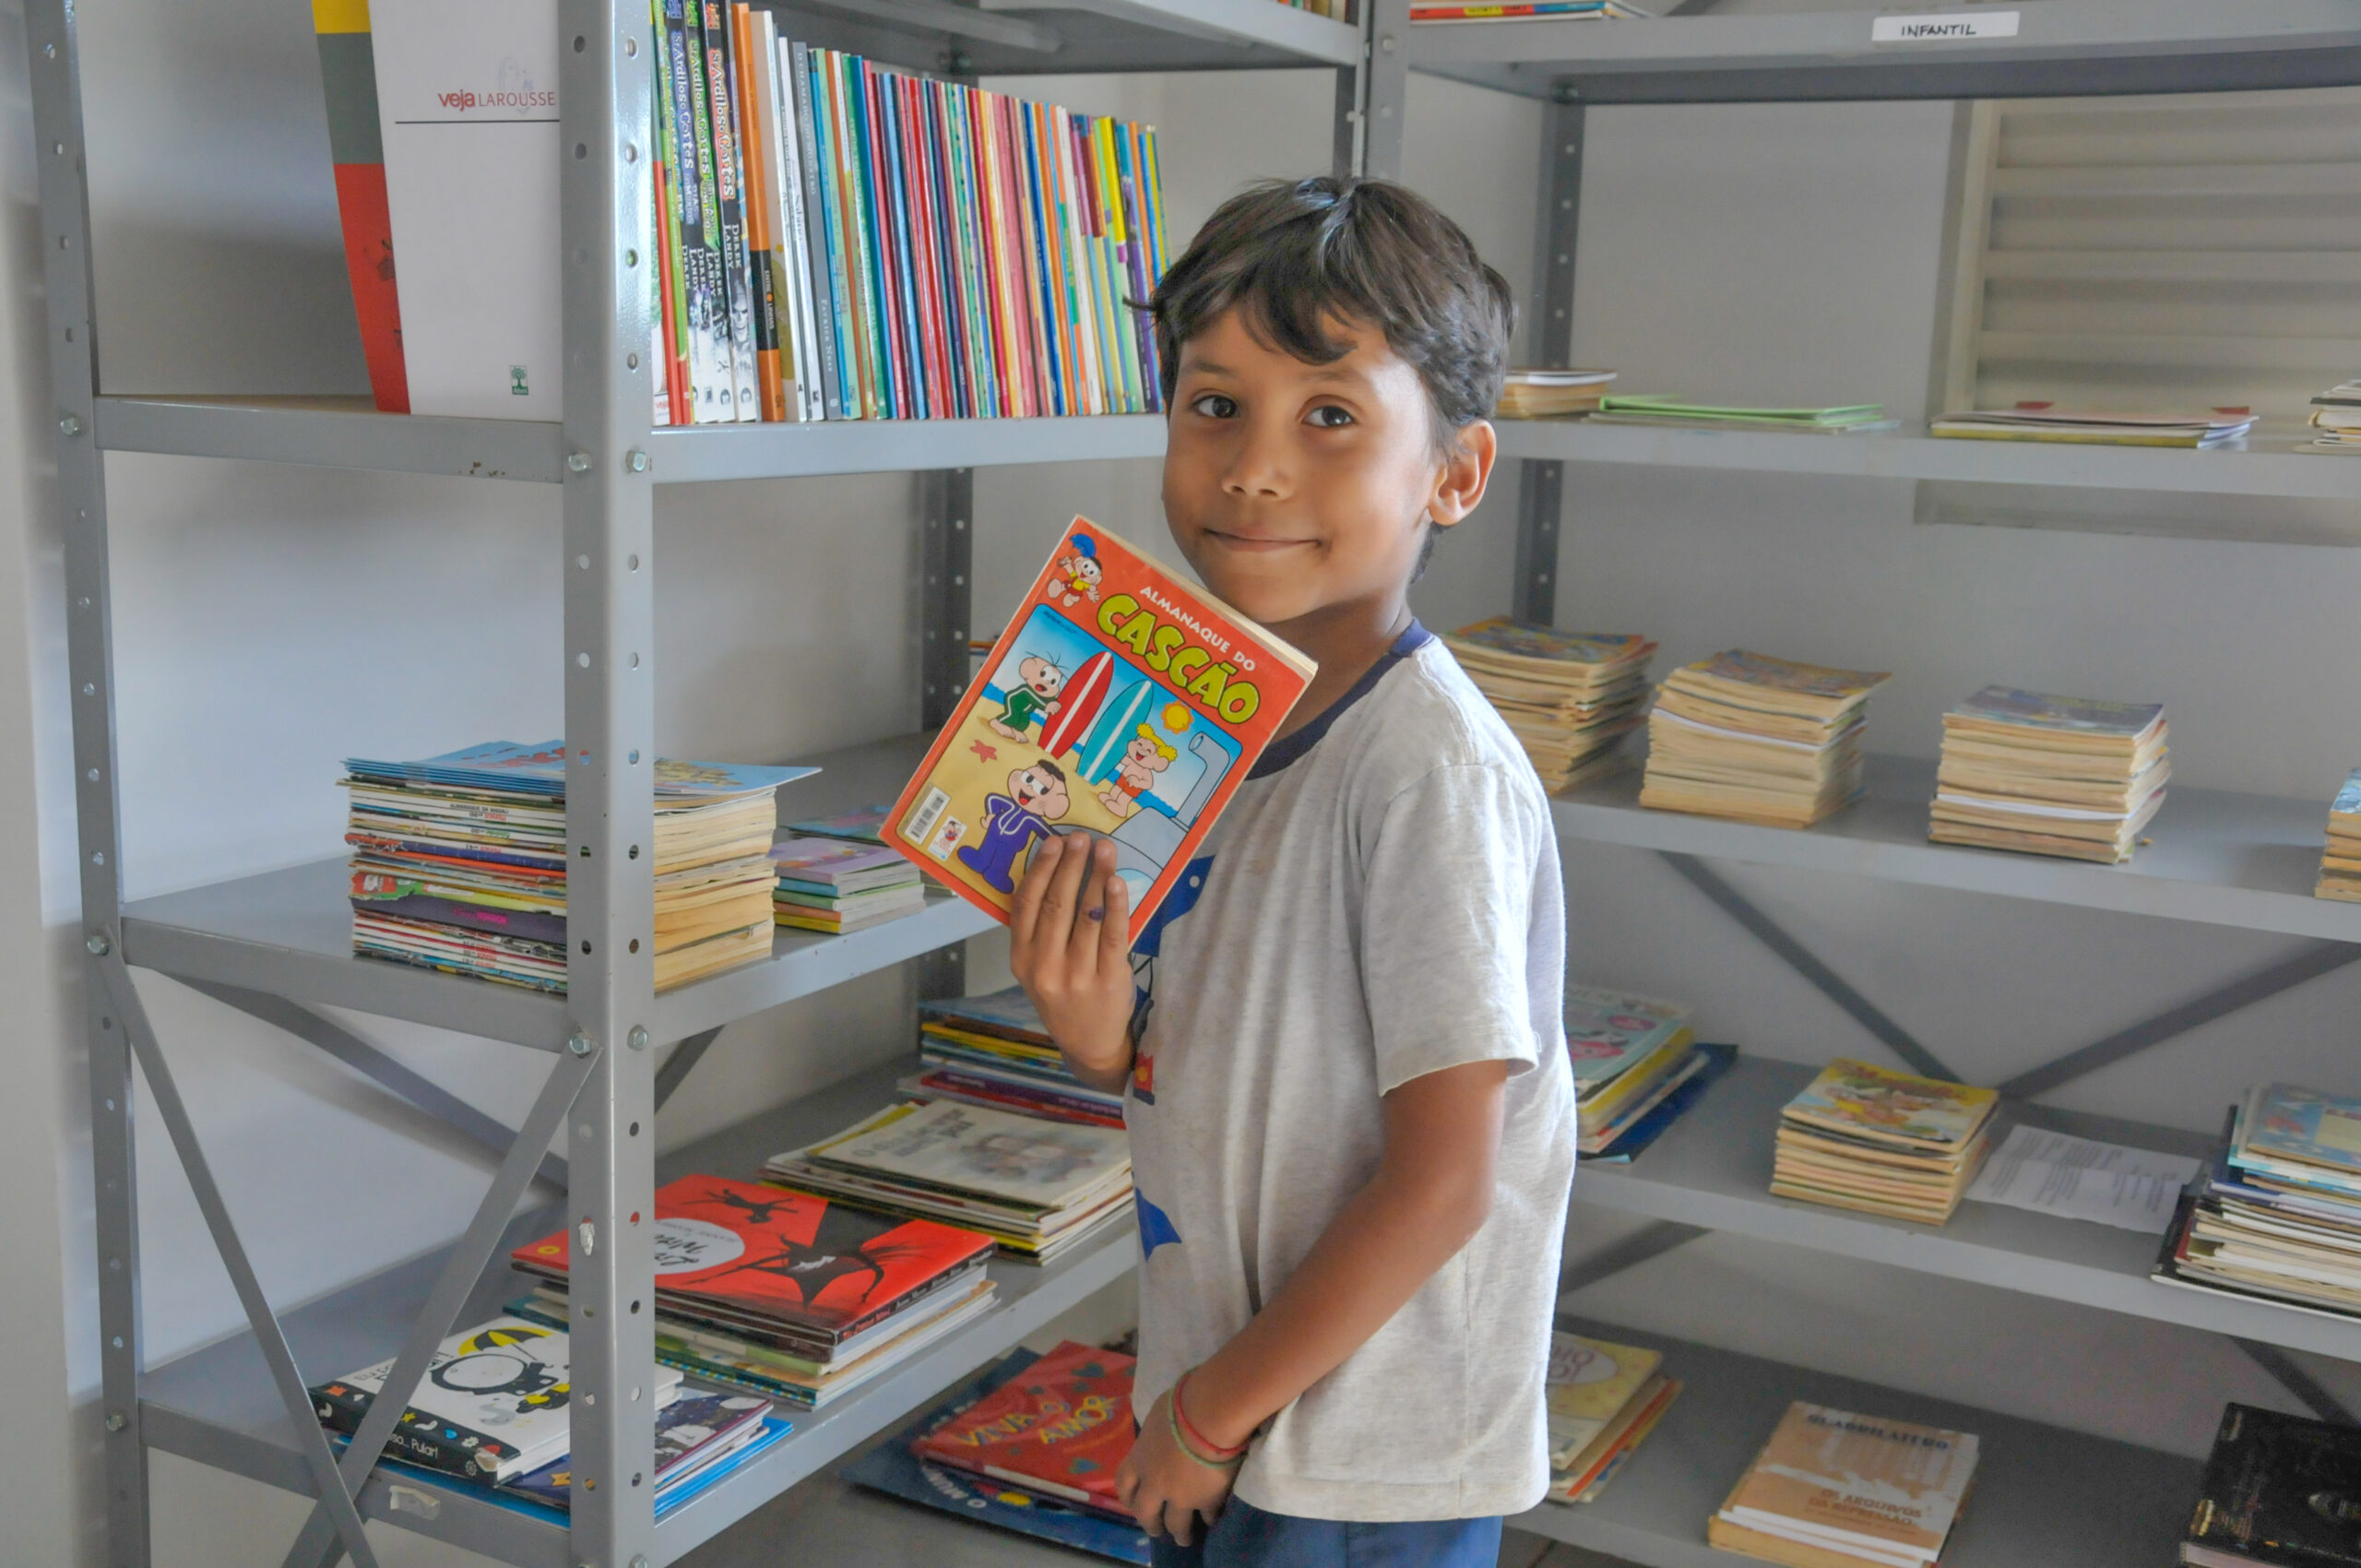 Morador do Cruzeiro Velho, Lucca Almeida, 7 anos, vai com a mãe à biblioteca comunitária no Parque Bosque do Sudoeste; suas leituras preferidas são os mangás e gibis